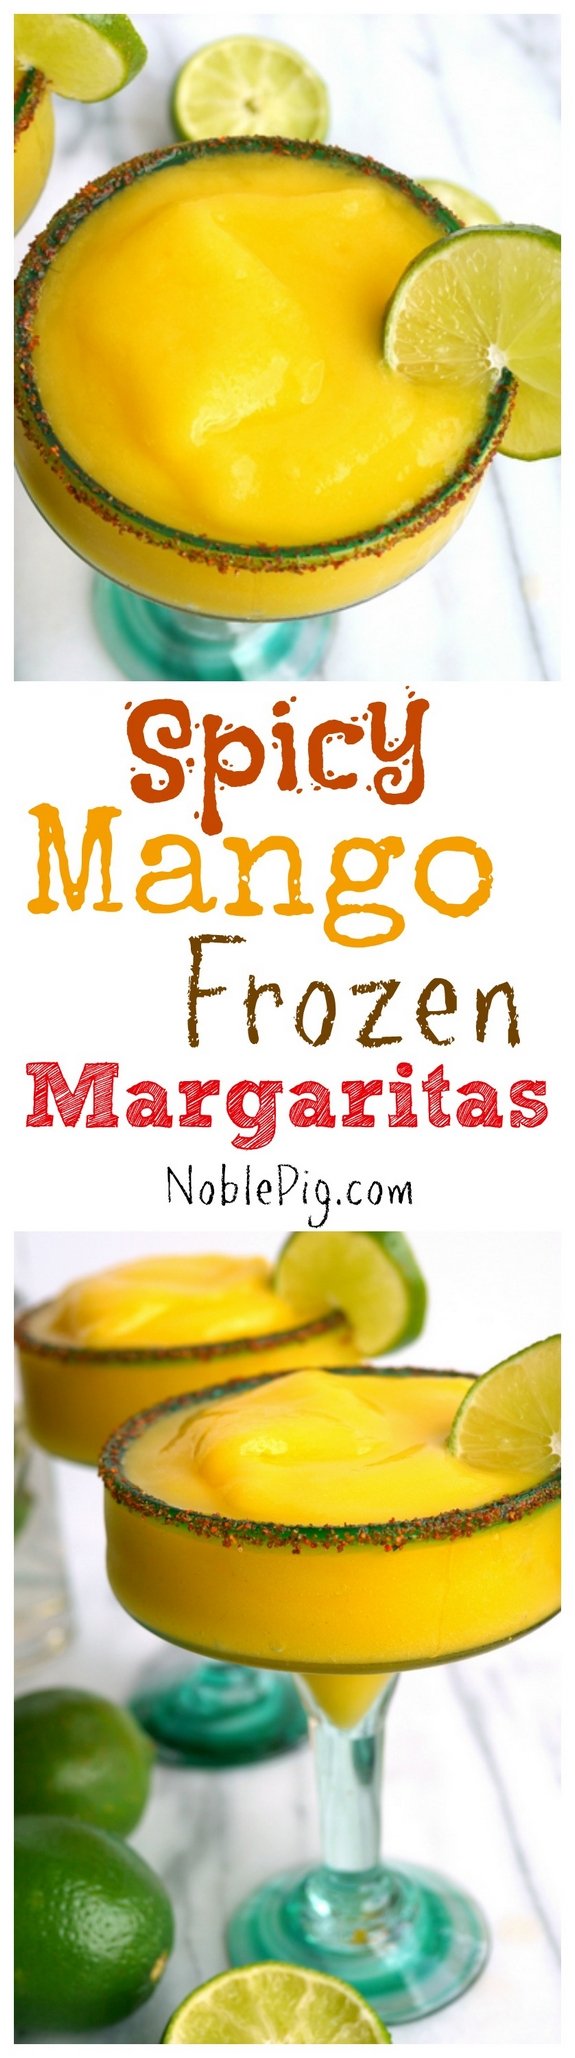 Spicy Mango Frozen Margaritas